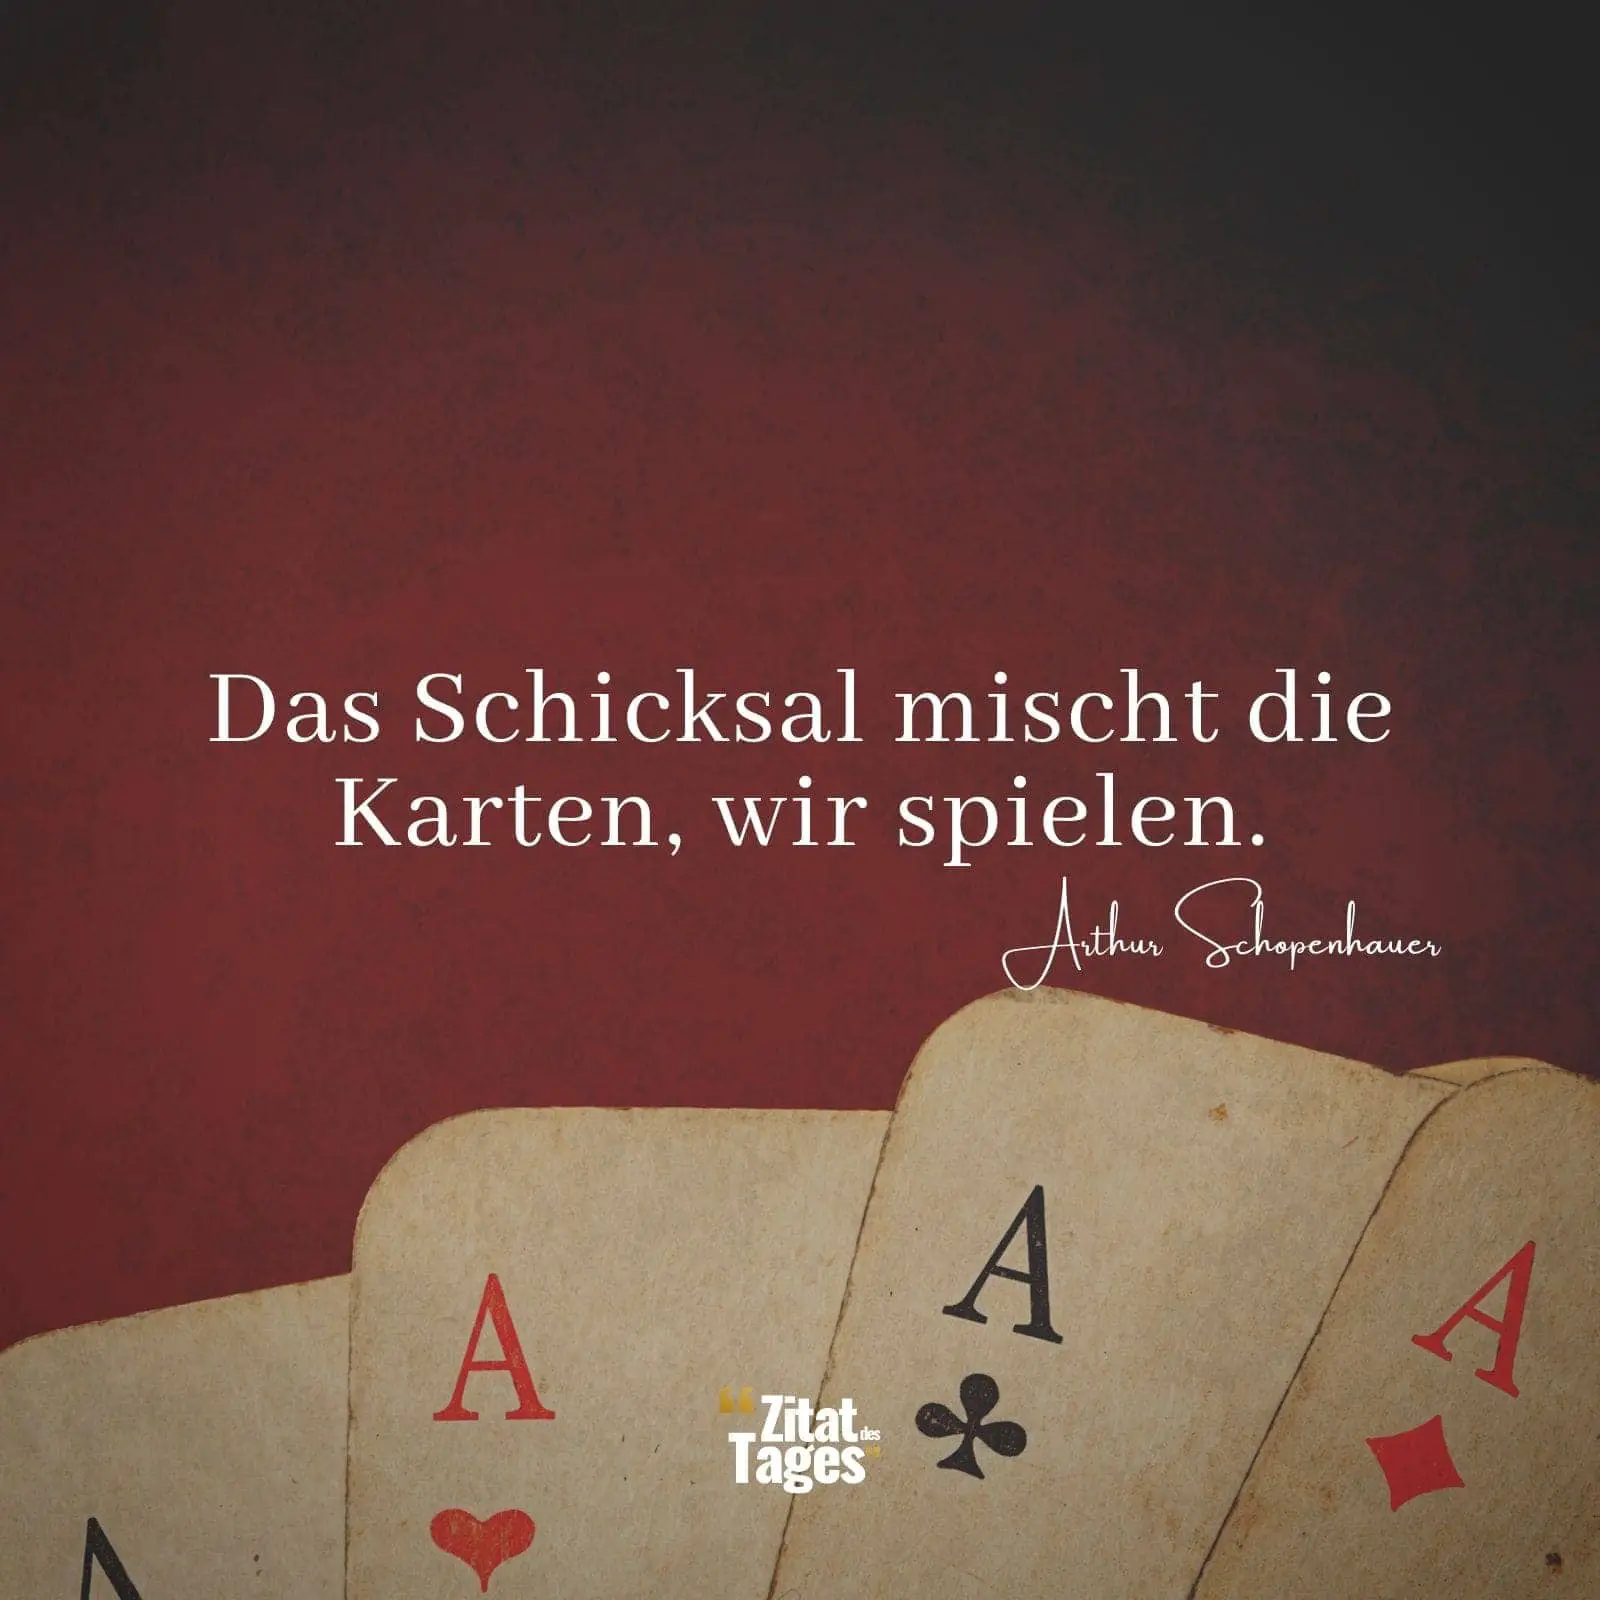 Das Schicksal mischt die Karten, wir spielen. - Arthur Schopenhauer